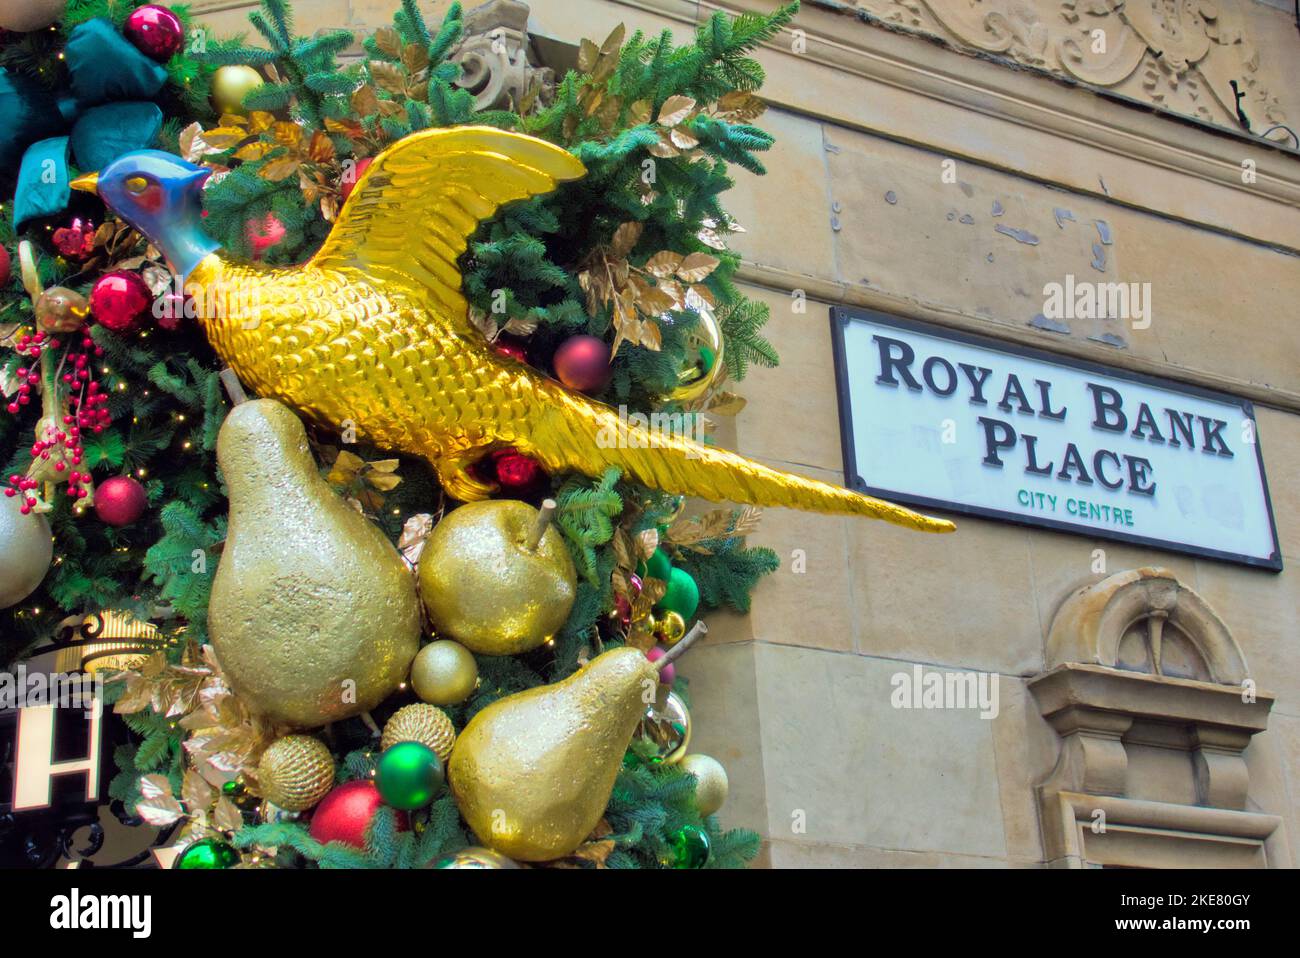 royal Bank place rue panneau ivy restaurant Glasgow extérieur façade décoration de Noël gros plan Banque D'Images